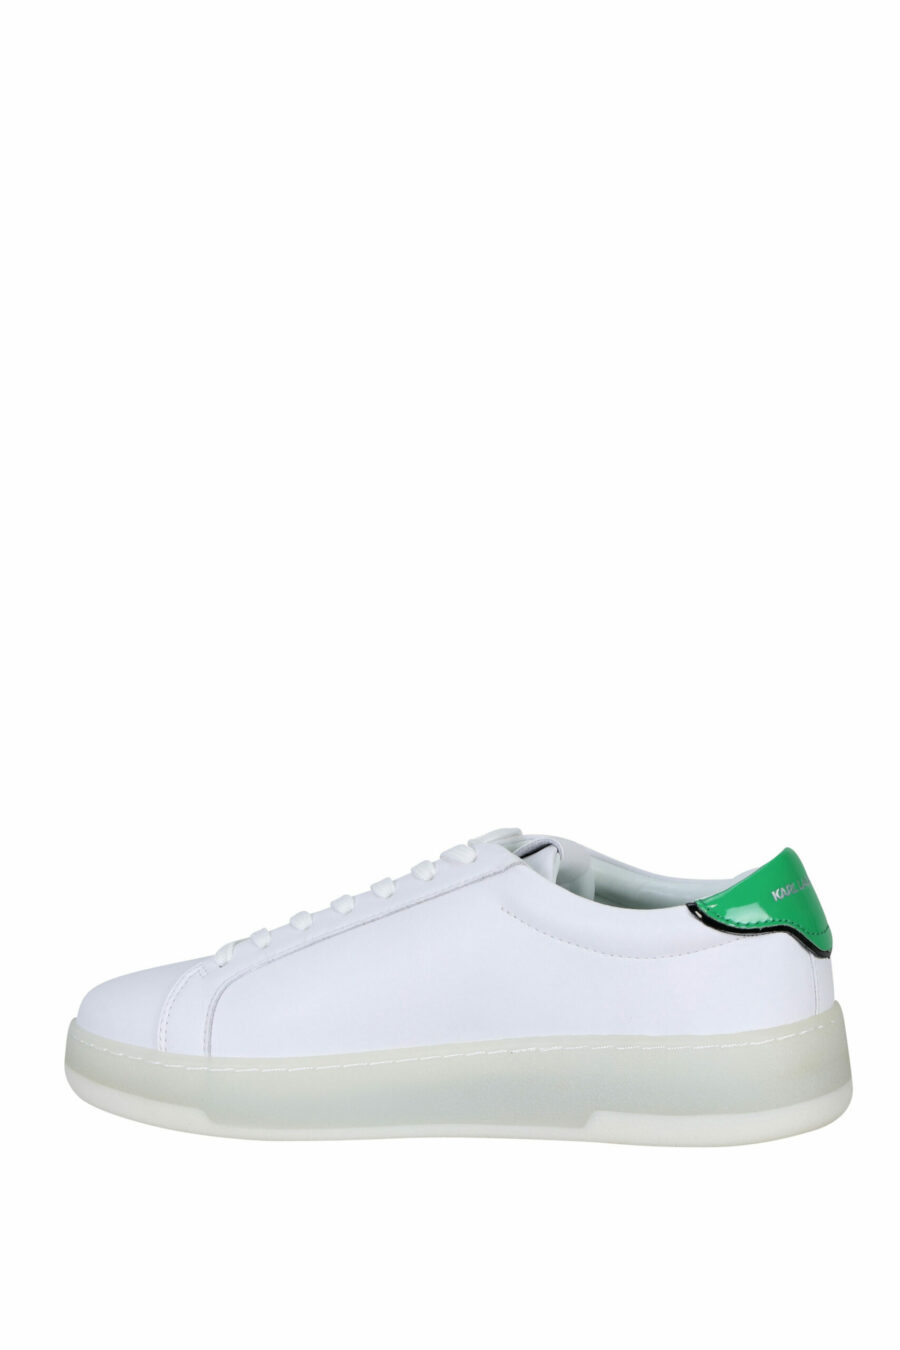 Zapatillas blancas con detalle verde y logo "st rue guillaume" - 5059529291289 2 scaled